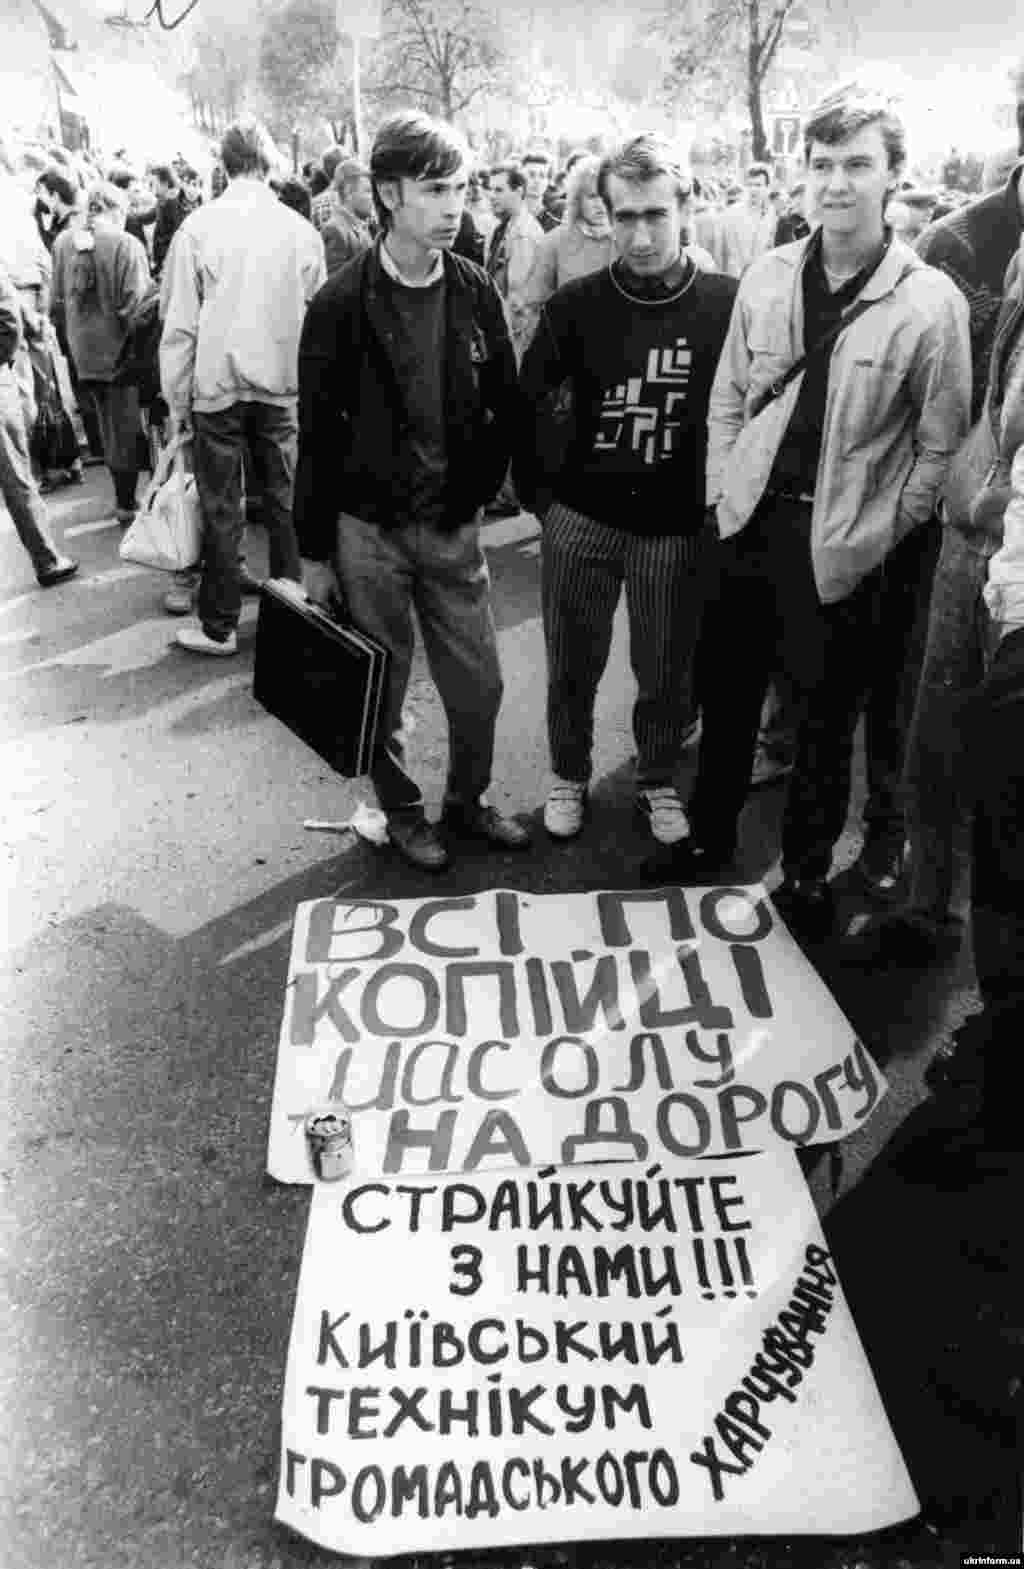 Відставка голови уряду Віталія Масола, якого згадано на плакаті, була однією з основних вимог студентів